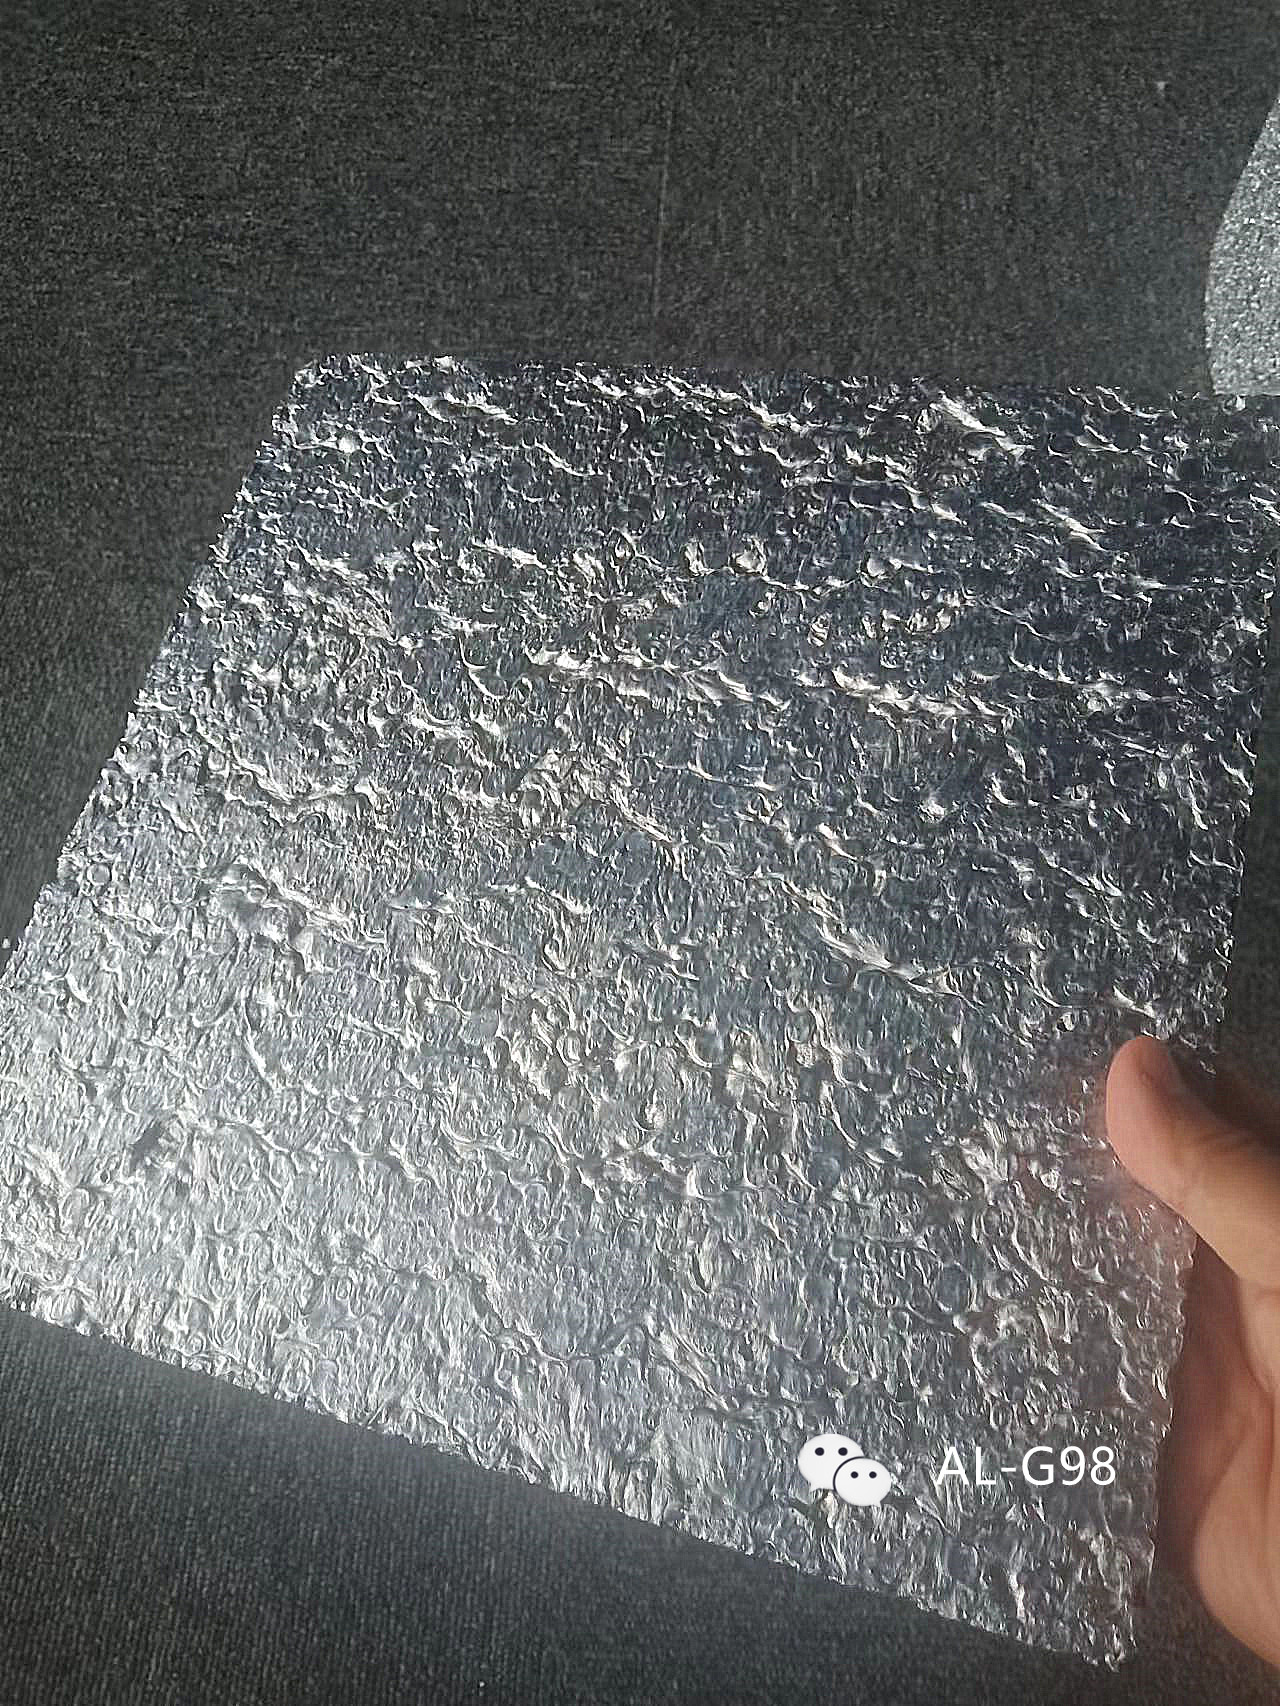 上海市建筑墙面装饰材料进口泡沫铝厂家